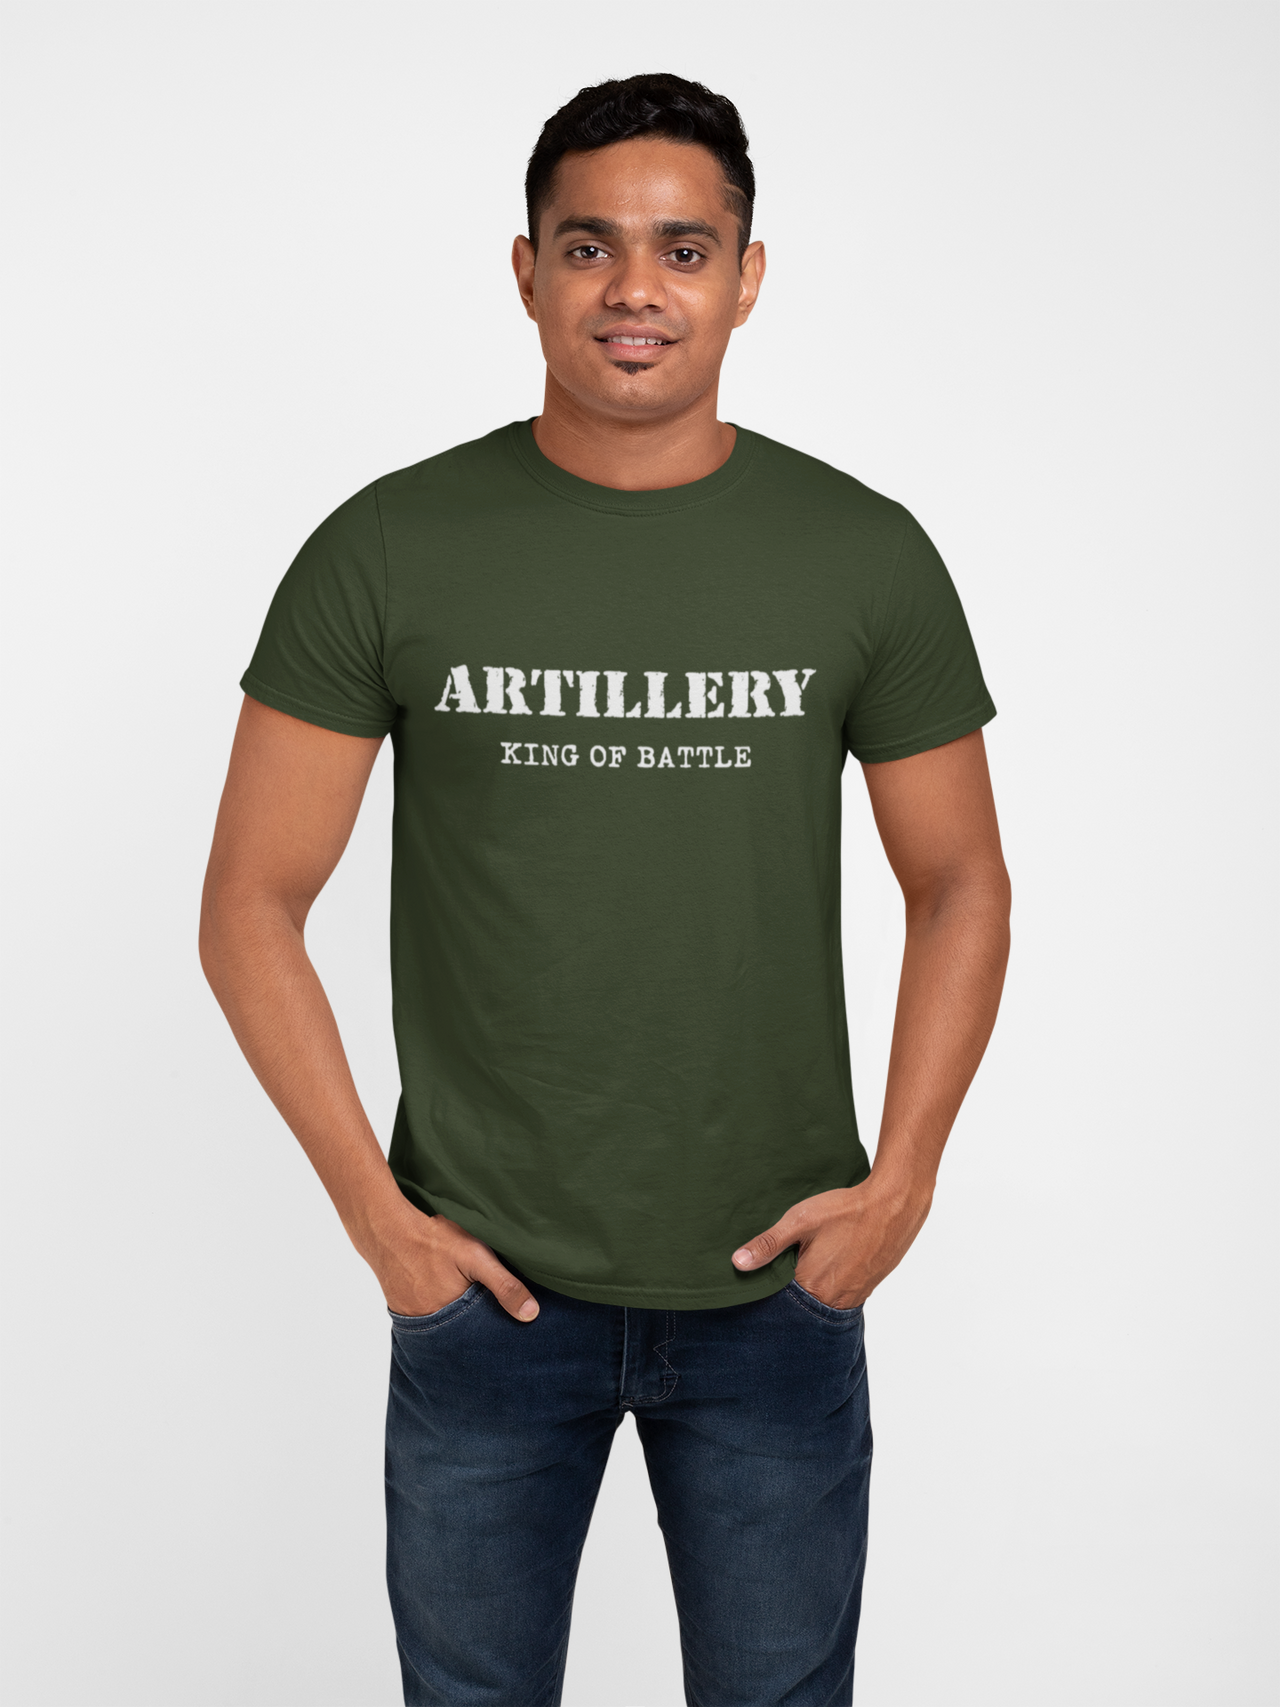 Artillery T-shirt - Artillery King of Battle (Men)